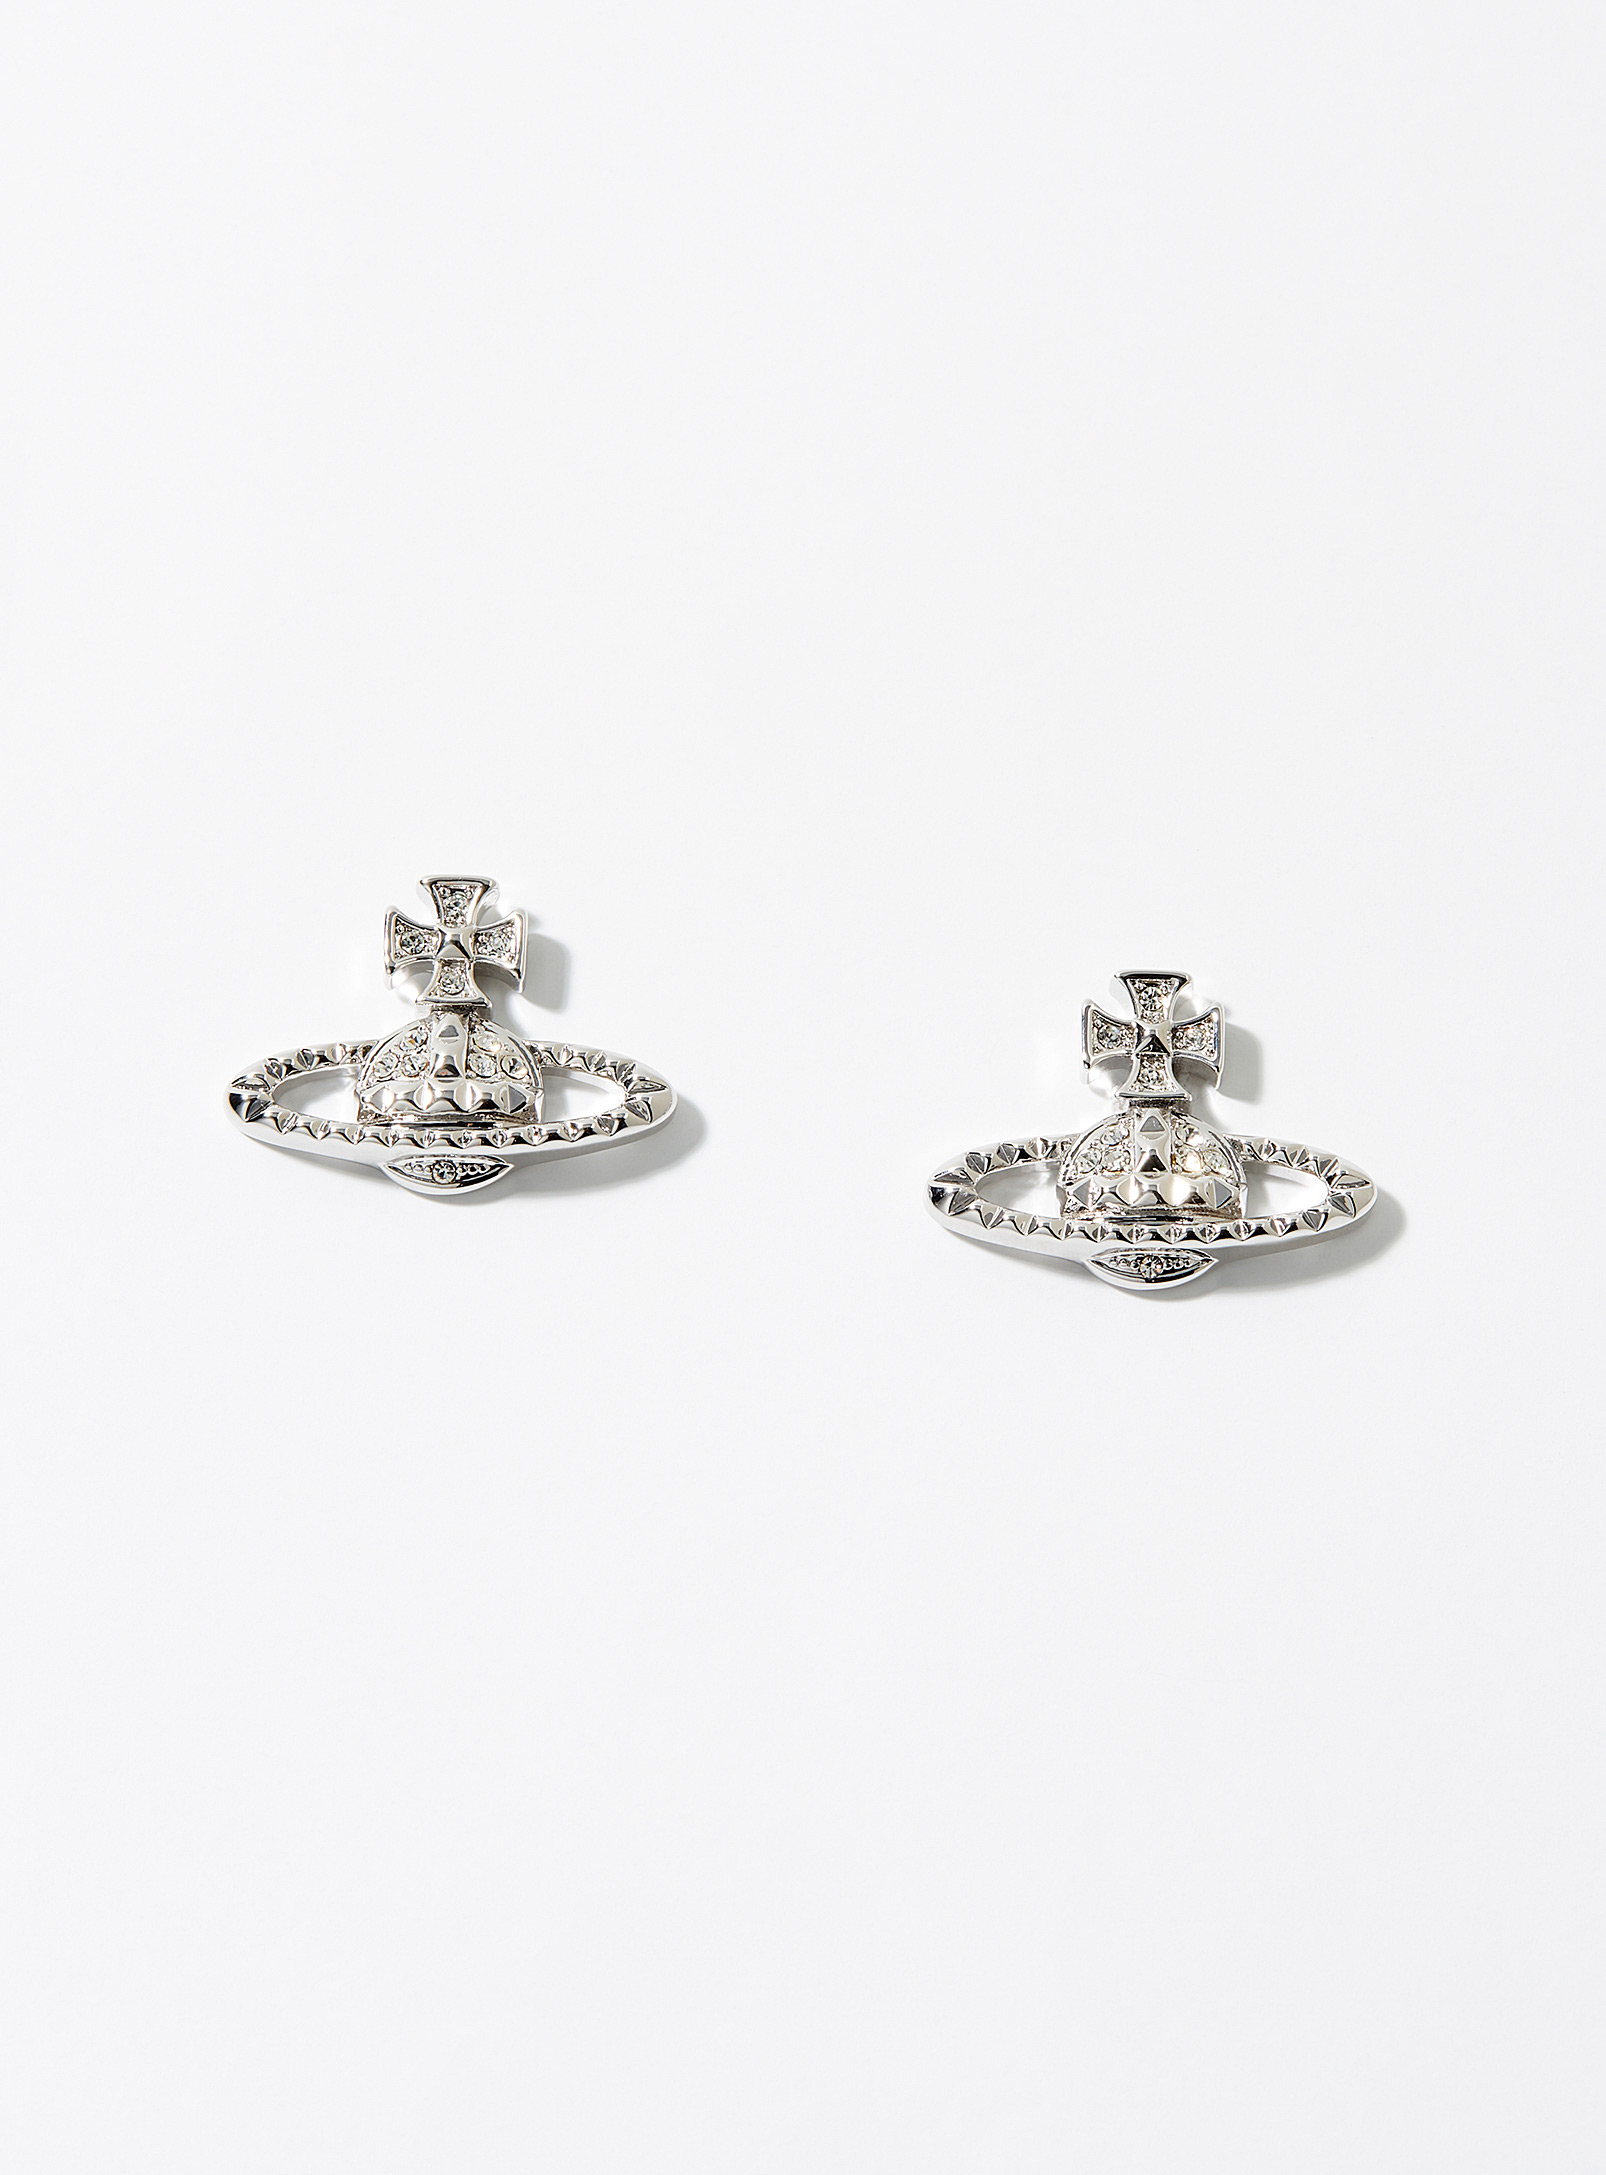 Vivienne Westwood Mayfair Bas Relief Earrings In Metallic